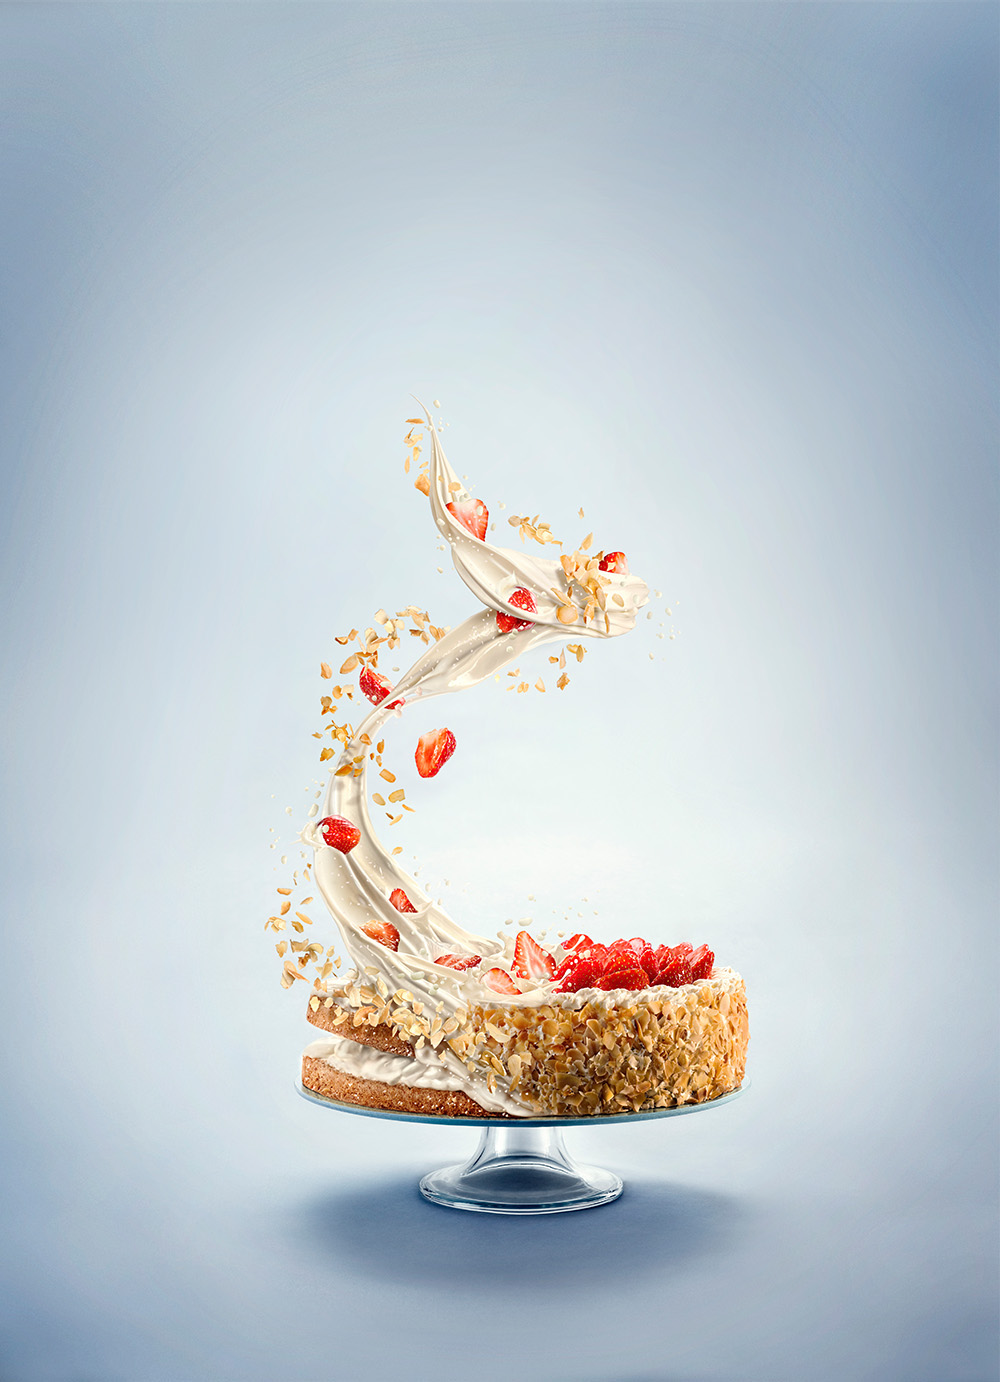 Retro Rustic Cake Poster Graphic by utixgrapix · Creative Fabrica